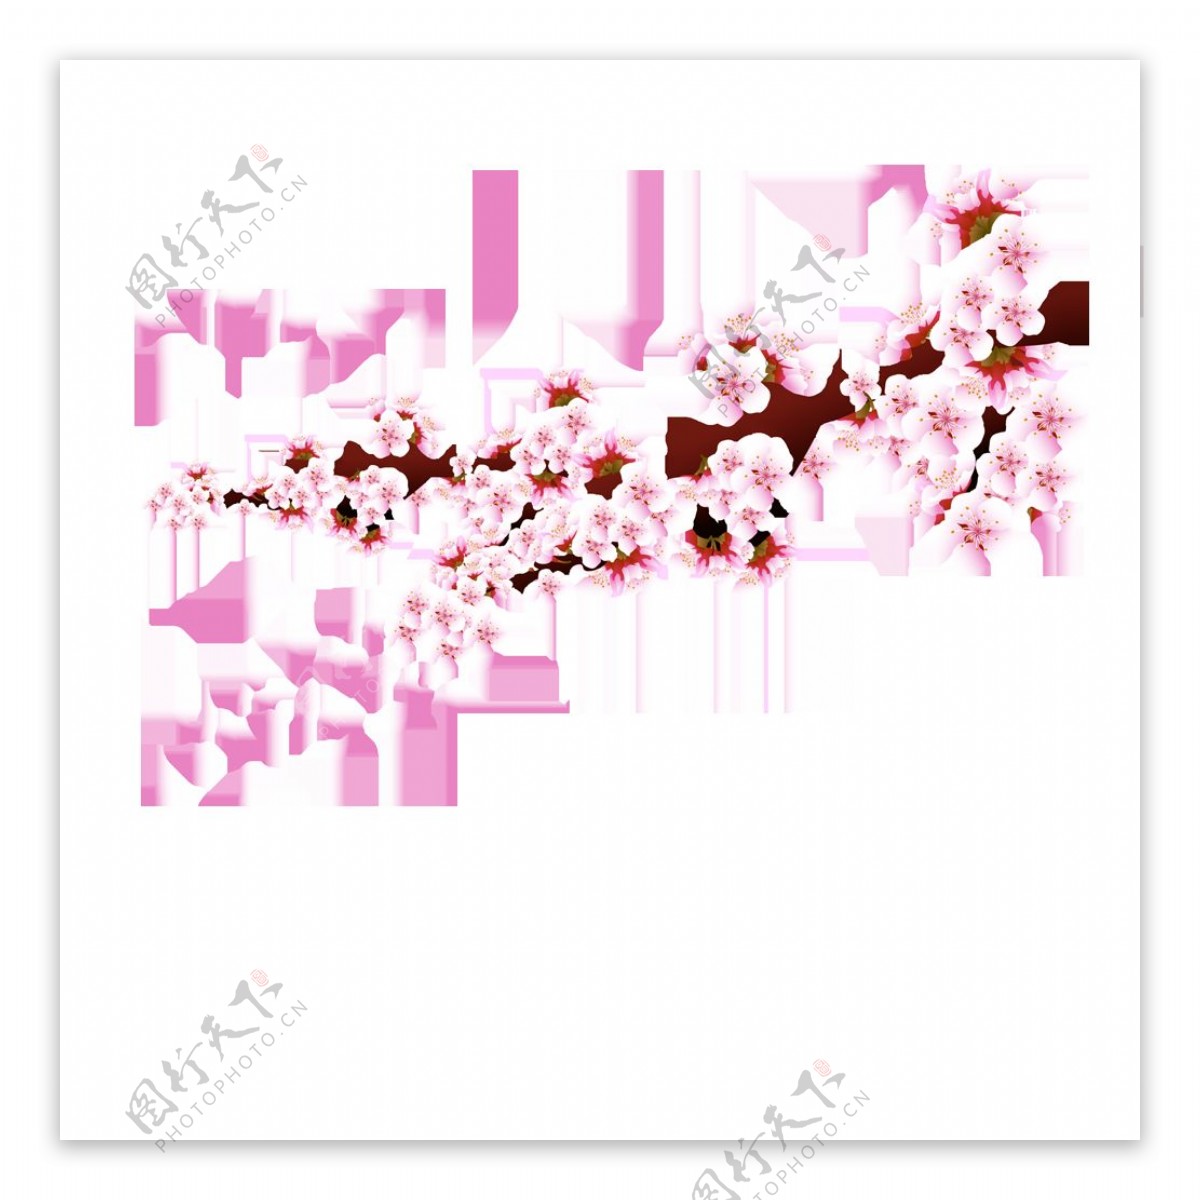 清新风格浅粉色花瓣樱花装饰元素